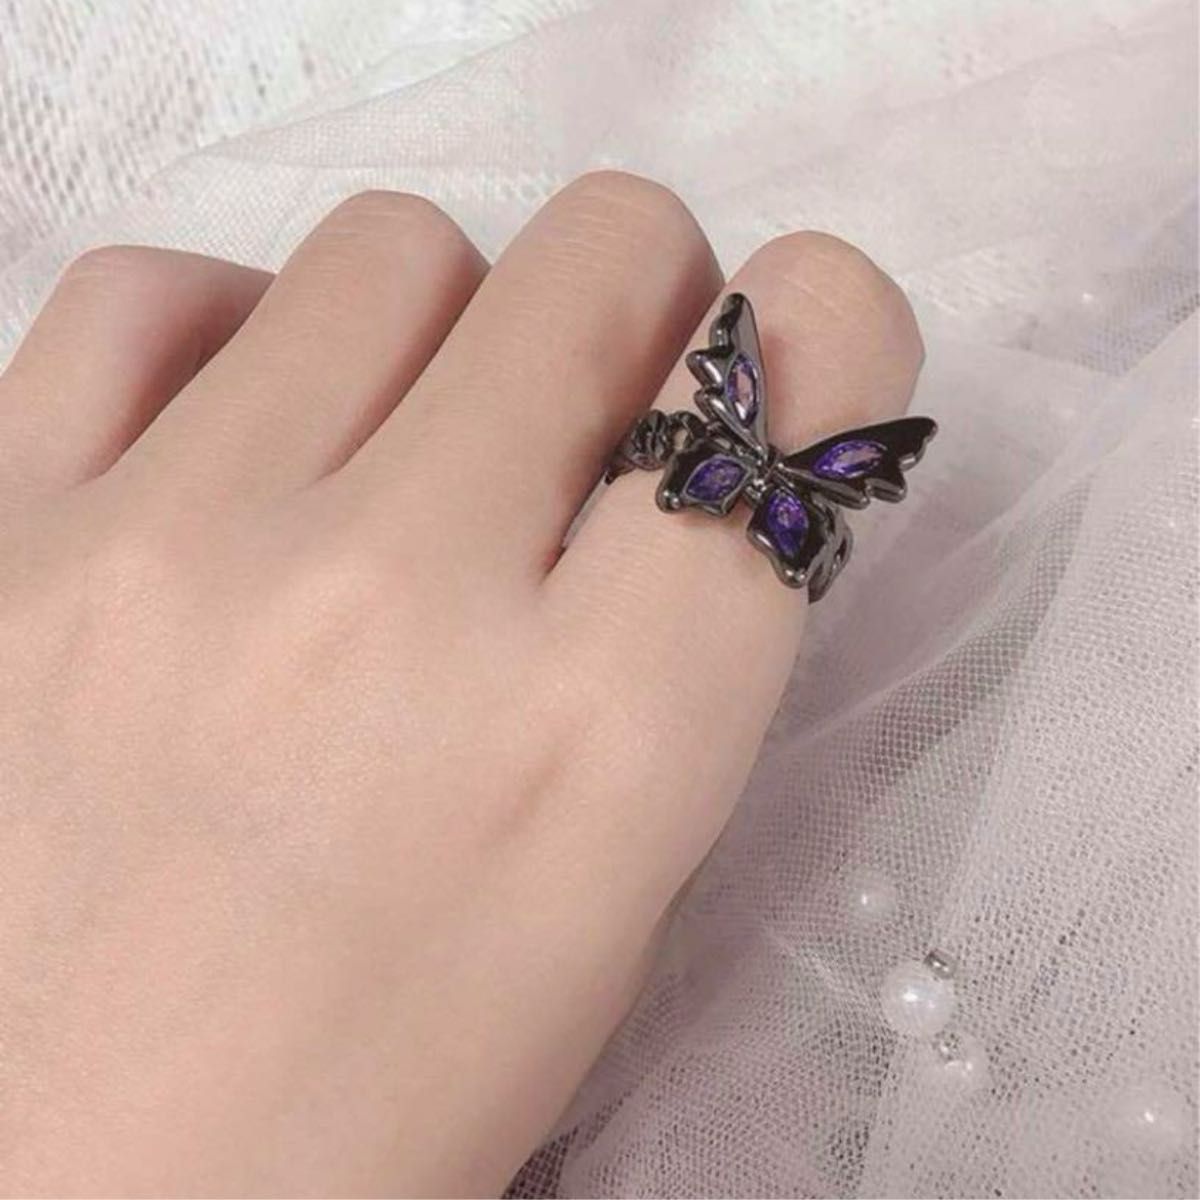 蝶々 バタフライ リング 指輪 パープル 紫 ブラック 黒 アクセサリー 蝶モチーフ 韓国 海外 インポート品